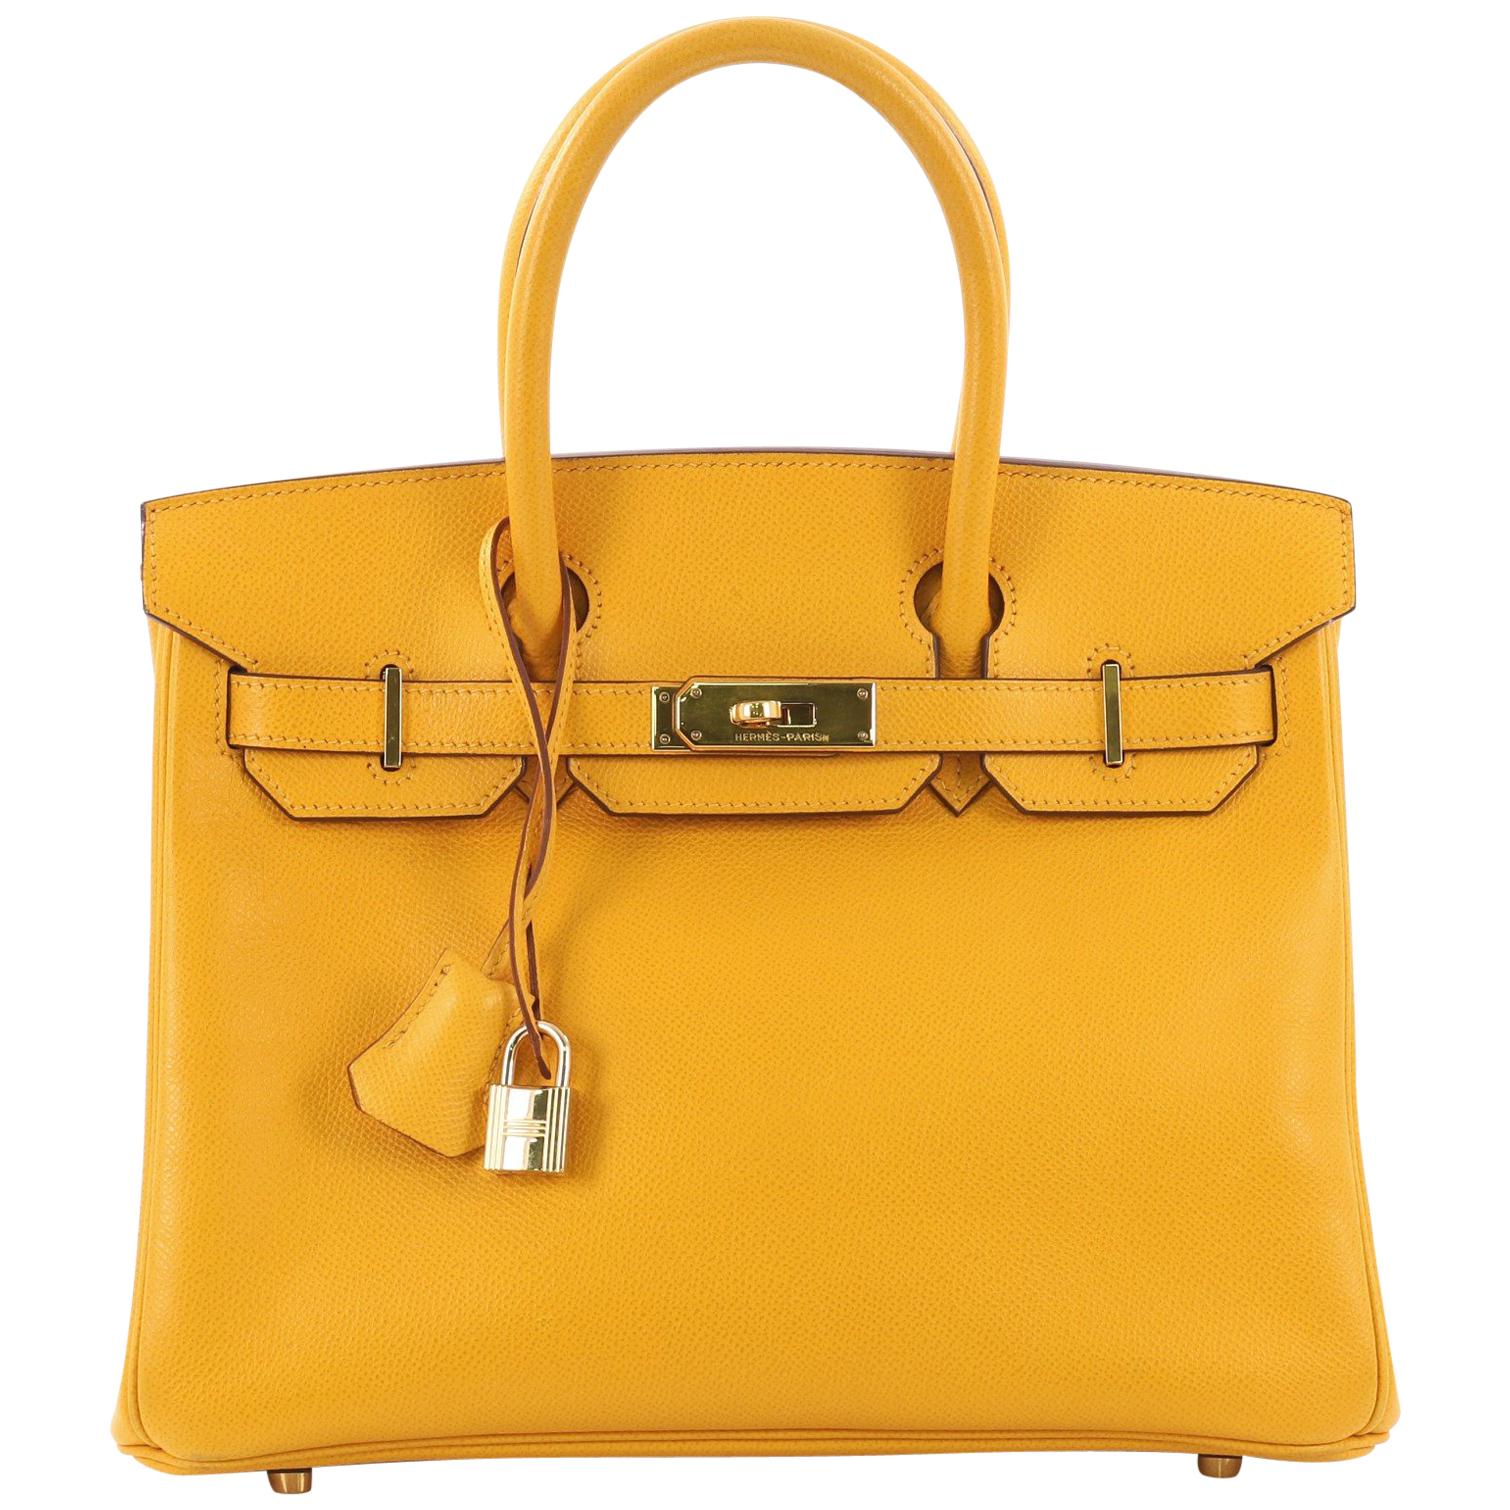 Hermes Birkin Handbag Jaune Courchevel with Gold Hardware 30